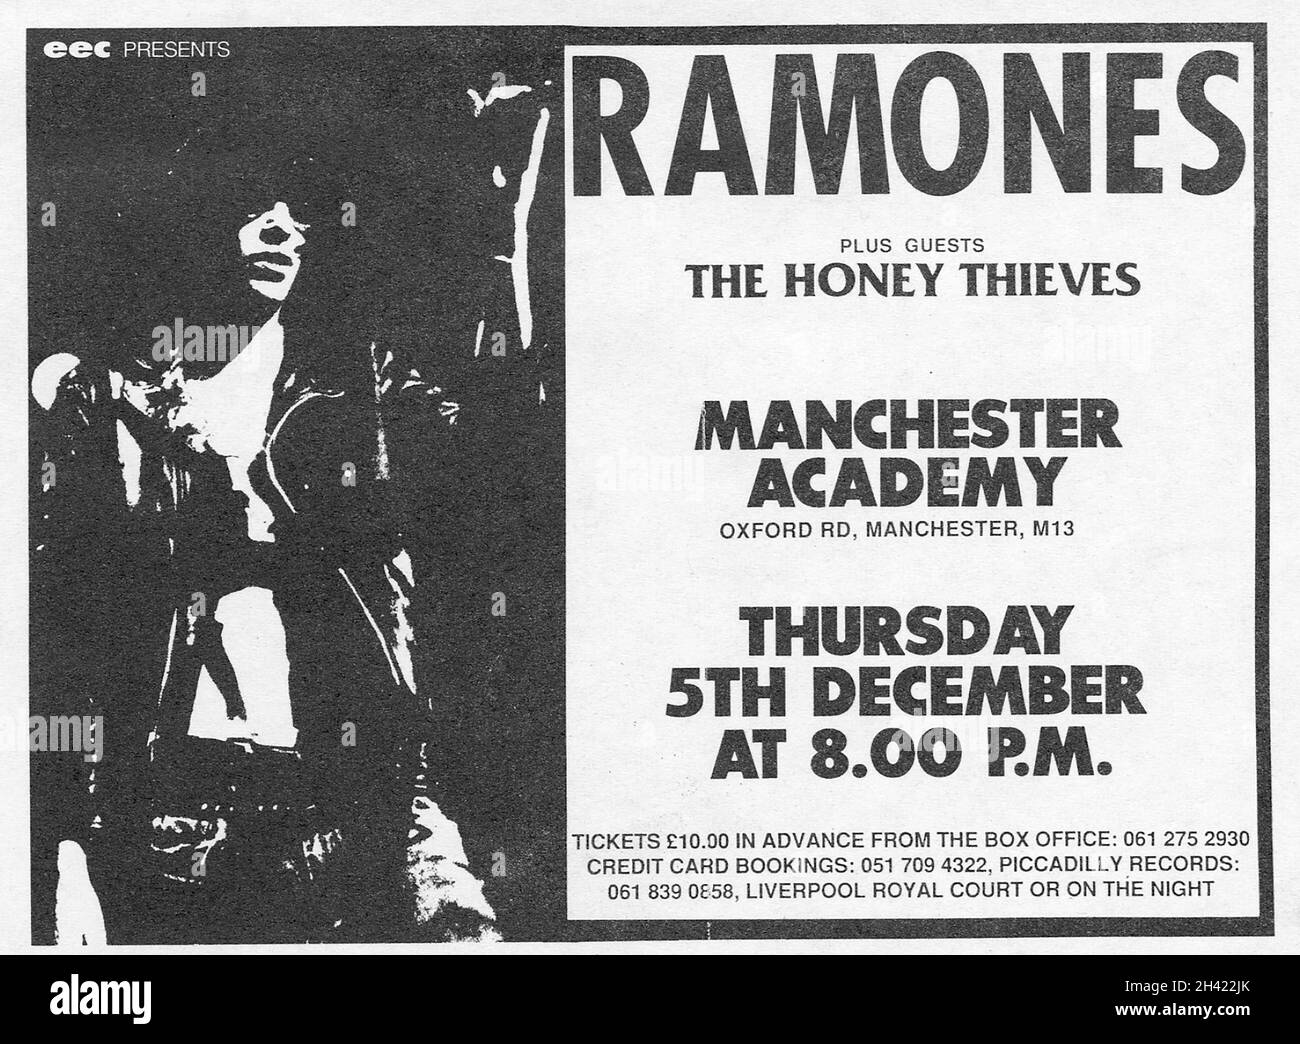 The Ramones Original UK Concert Flyer for a show at Manchester Academy, Oxford Road, Manchester, on December 5. 1985. Litho stampato in nero su carta bianca opaca. Questi sono stati forniti presso i negozi locali per pubblicizzare lo spettacolo, con biglietti al prezzo di £ 10. La band di supporto era il Honey Thieves. Foto Stock